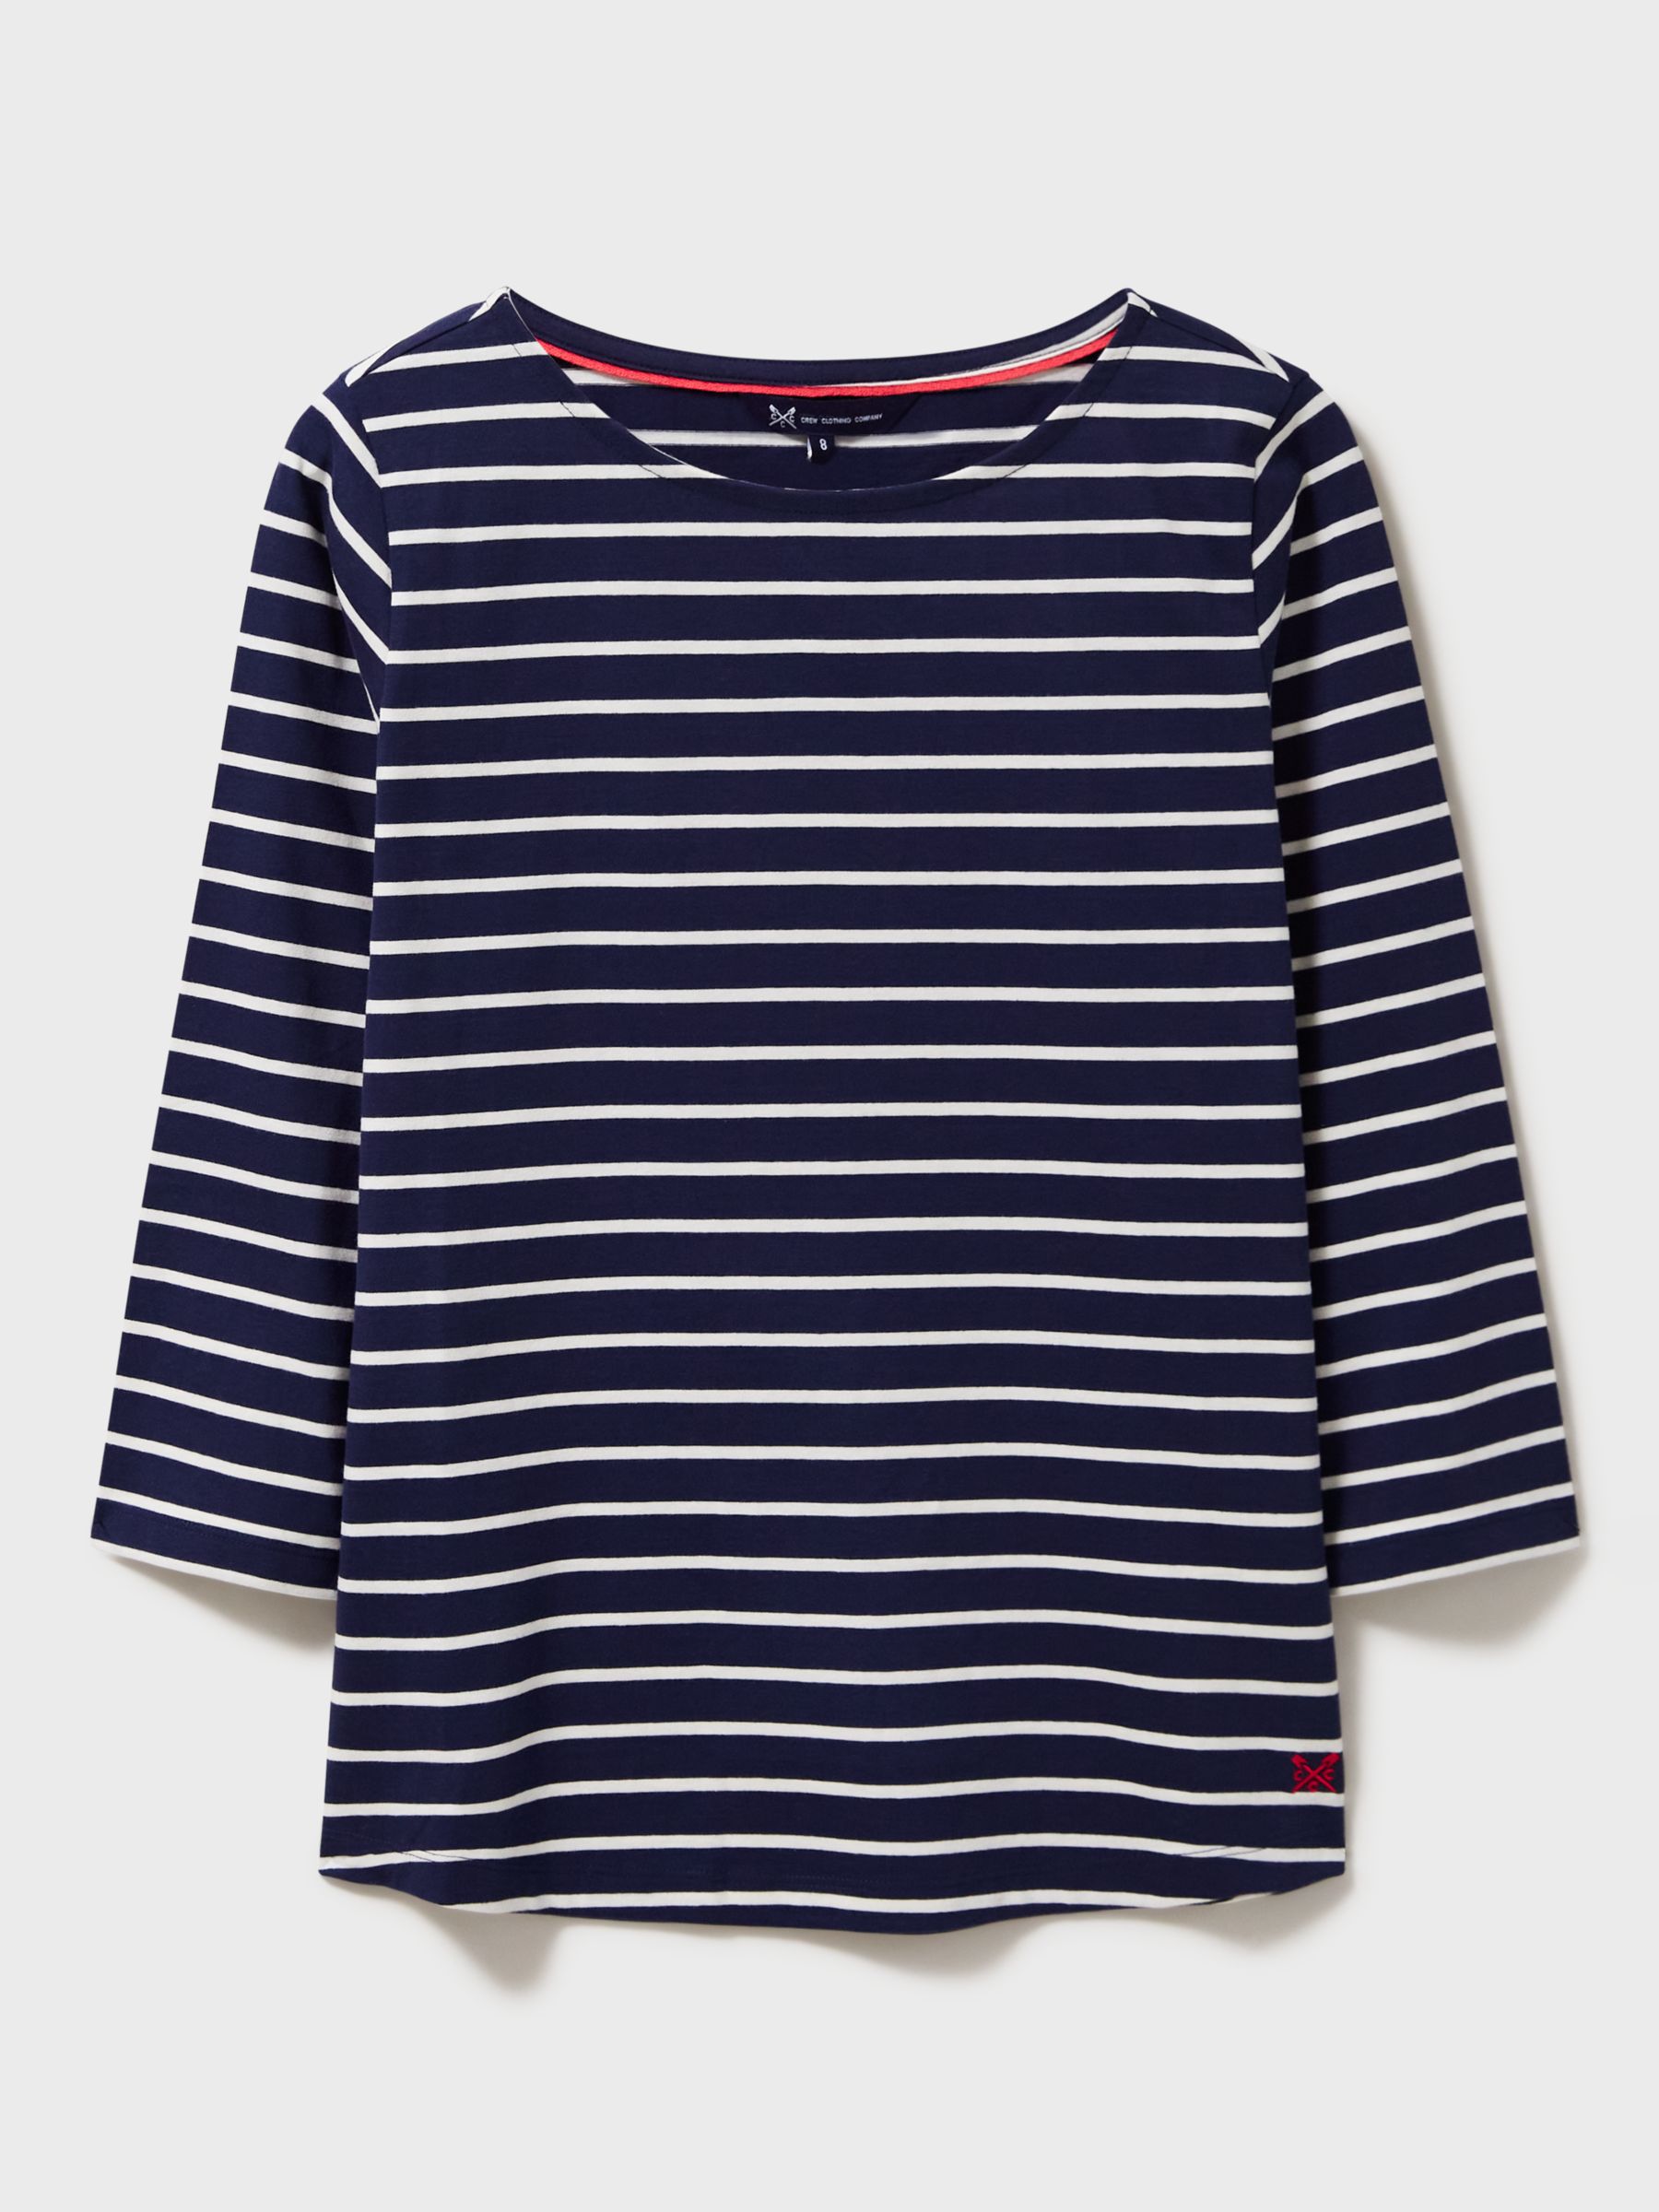 Crew Clothing Essential Breton Stripe Top, Navy/White, 18